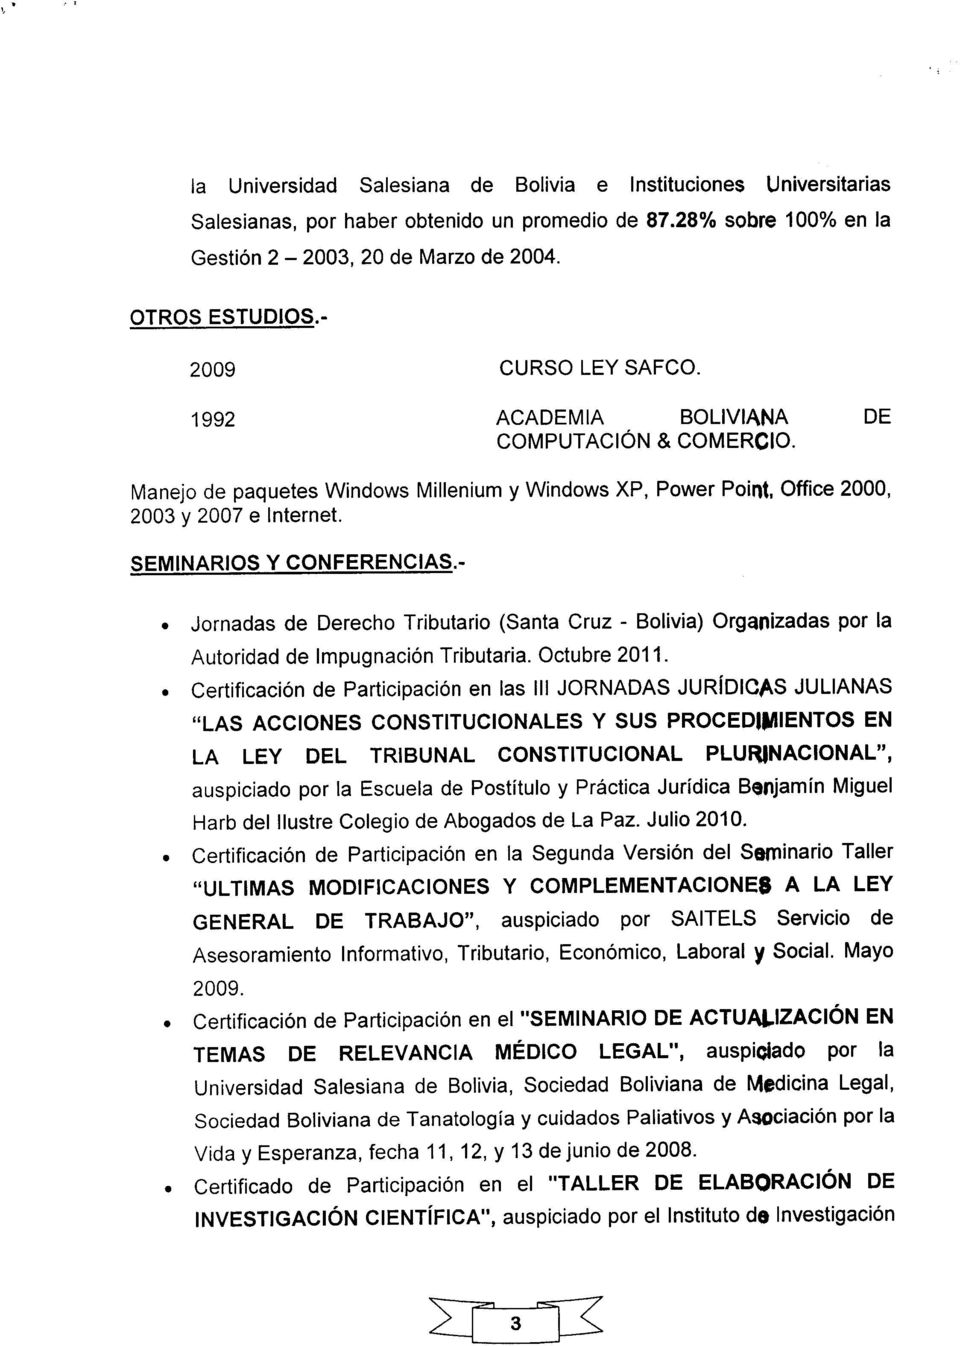 - Jornadas de Derecho Tributario (Santa Cruz - Bolivia) Organizadas por la Autoridad de ImpugnaciónTributaria. Octubre 2011.